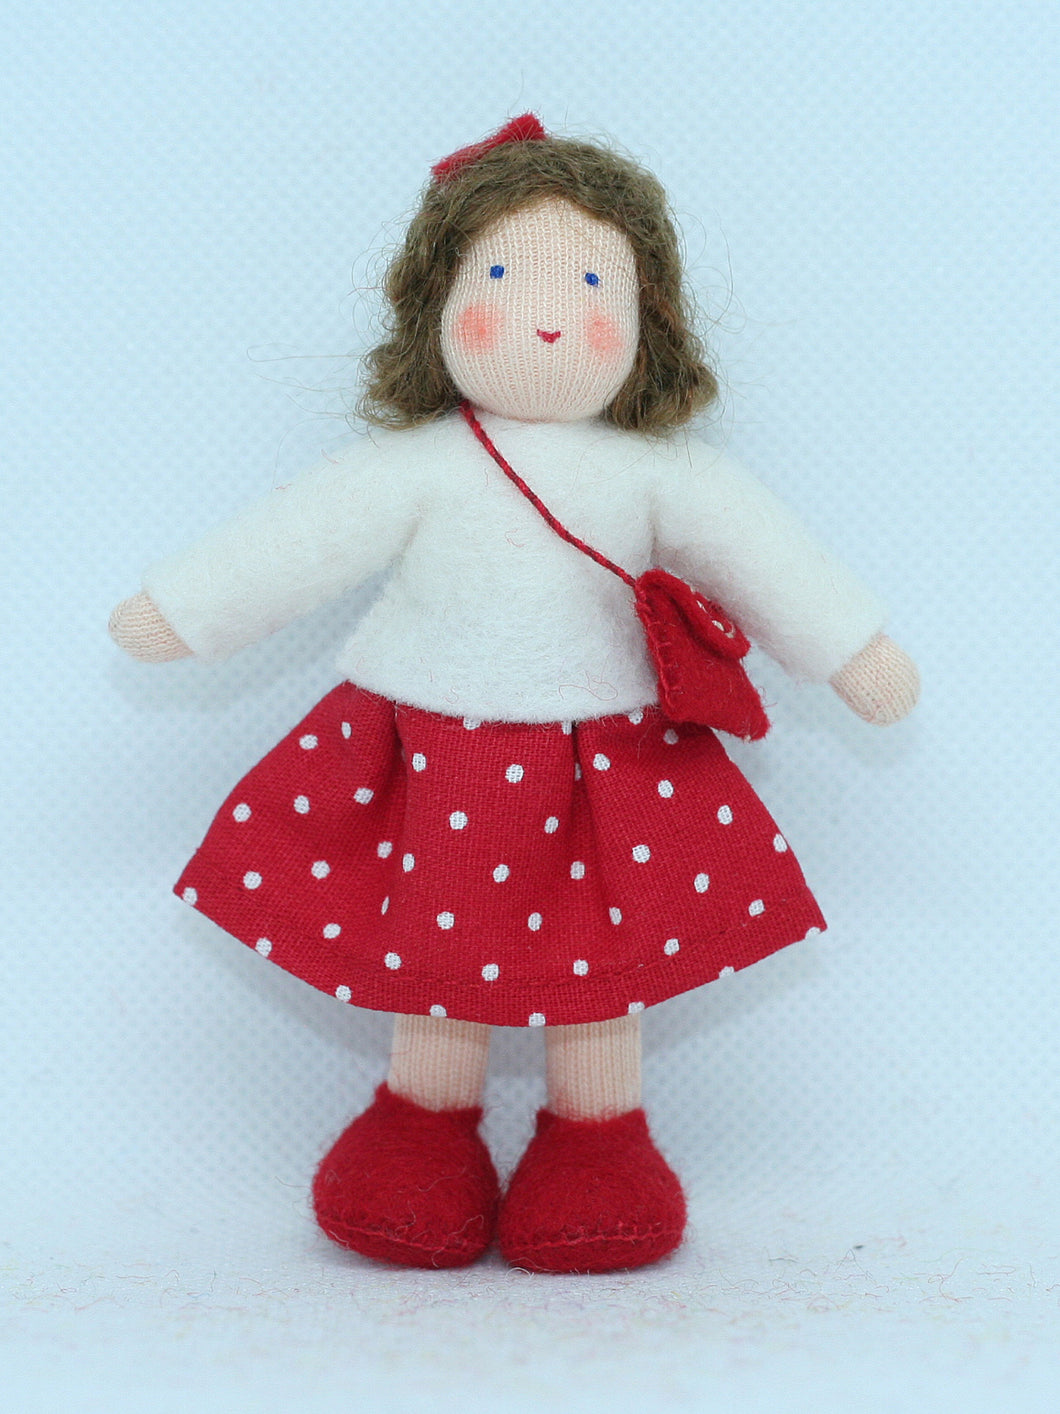 Girl Doll (miniature bendable felt doll, brunette, fair skin)